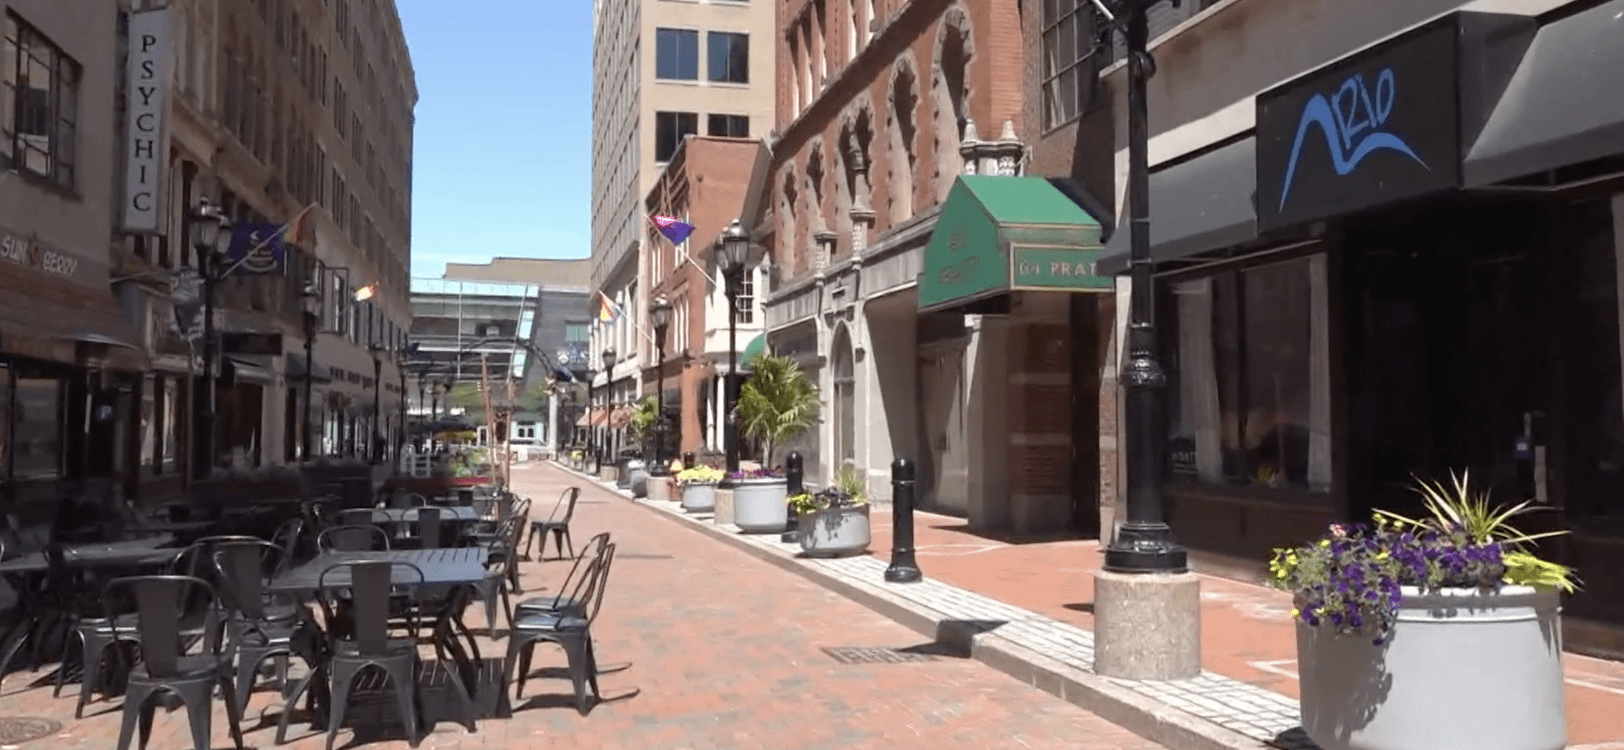 Hartford's Pratt Street to See More Businesses Open Thanks to Chamber of Commerce Grant Program